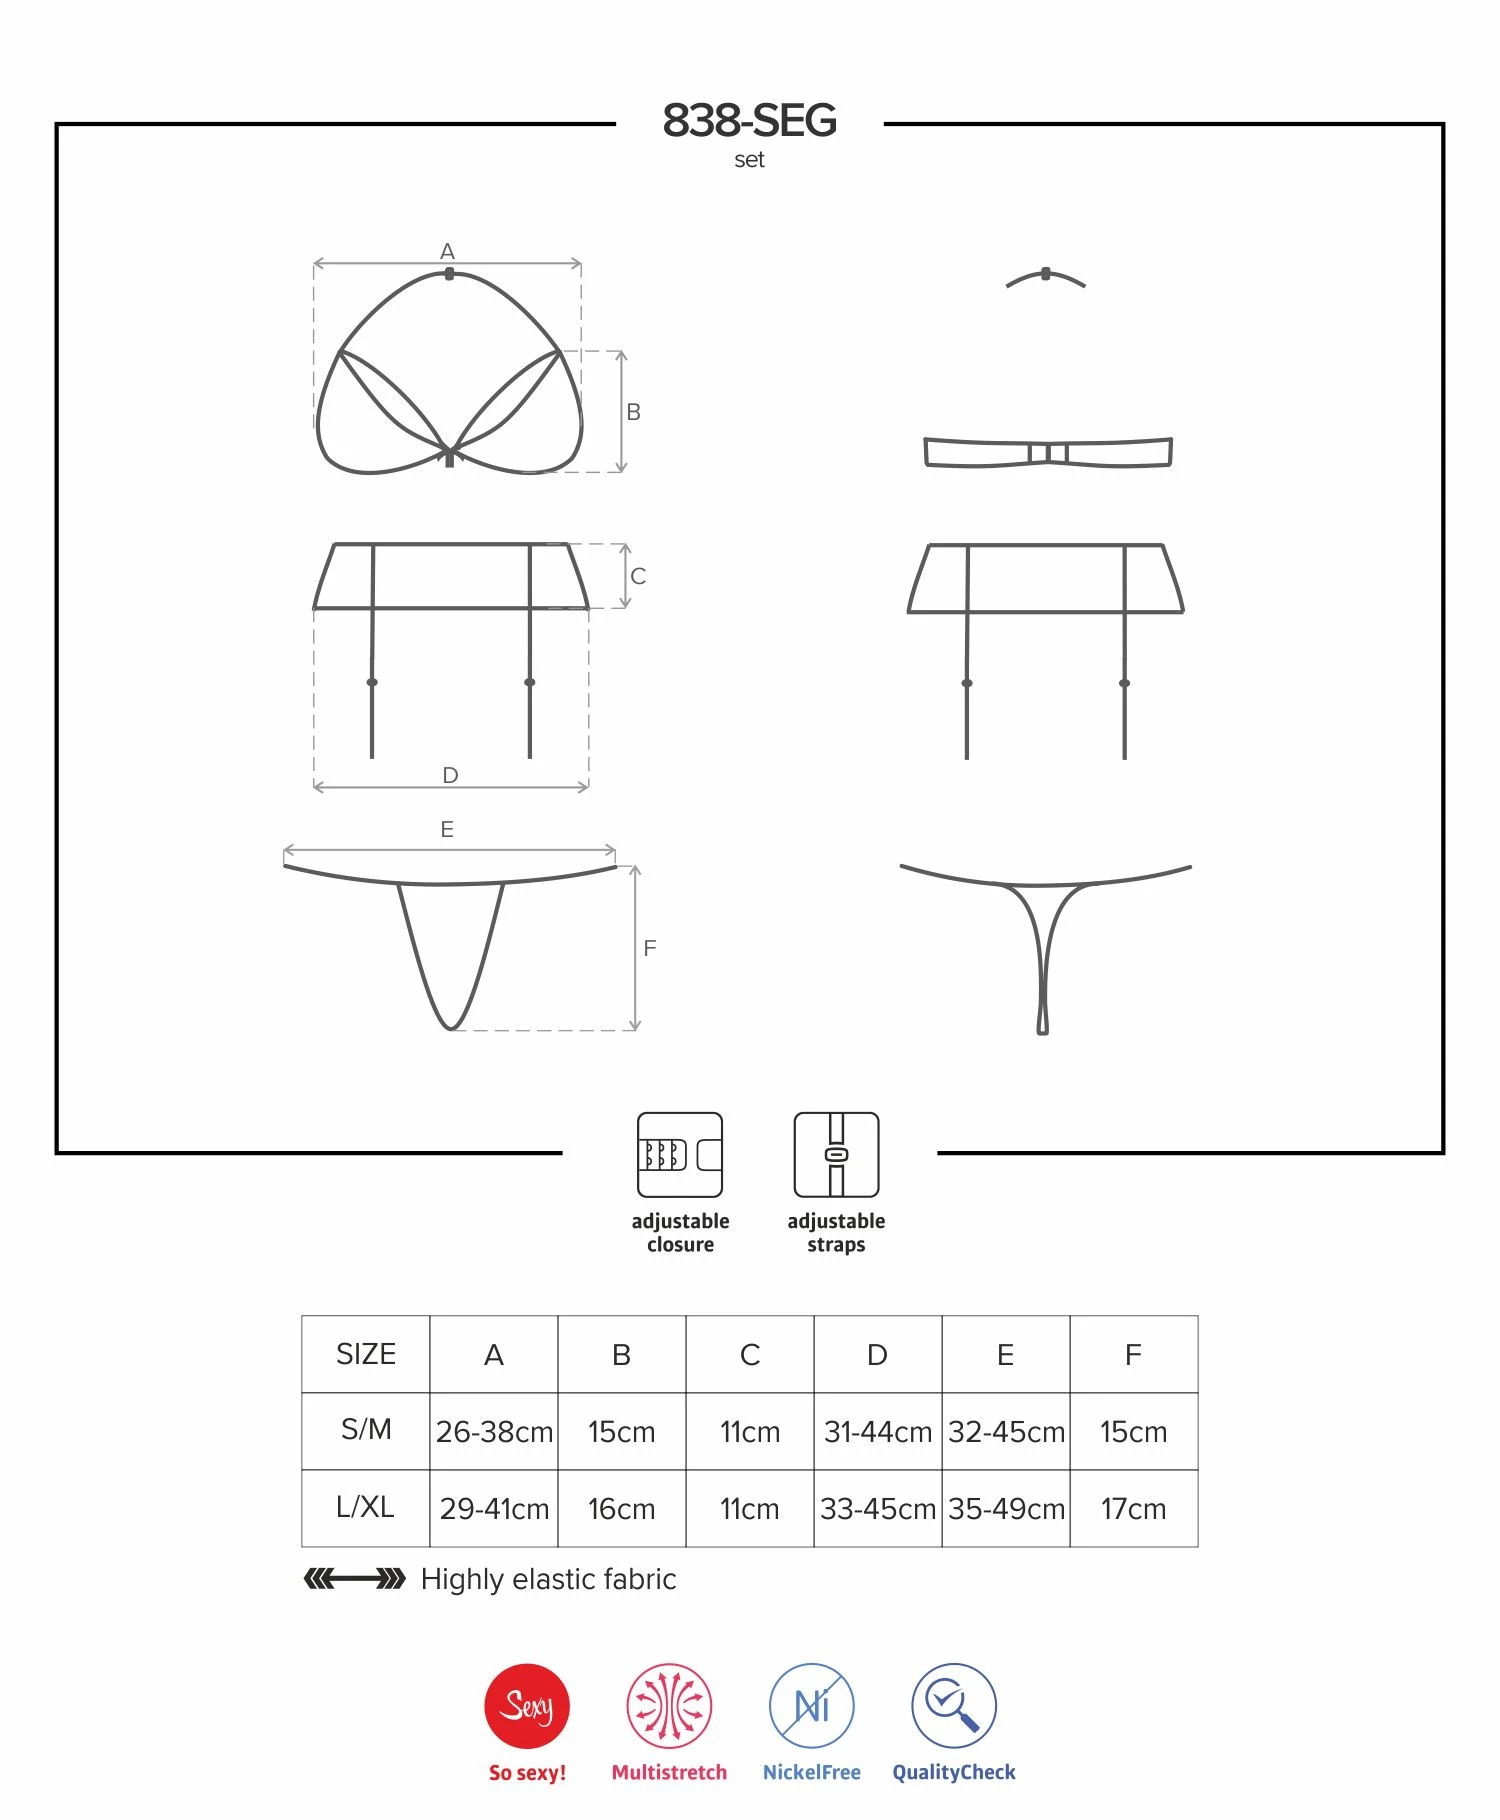 Súprava spodnej bielizne OBSESSIVE 838-SEG-3, tangá, podprsenka a podväzkový pás